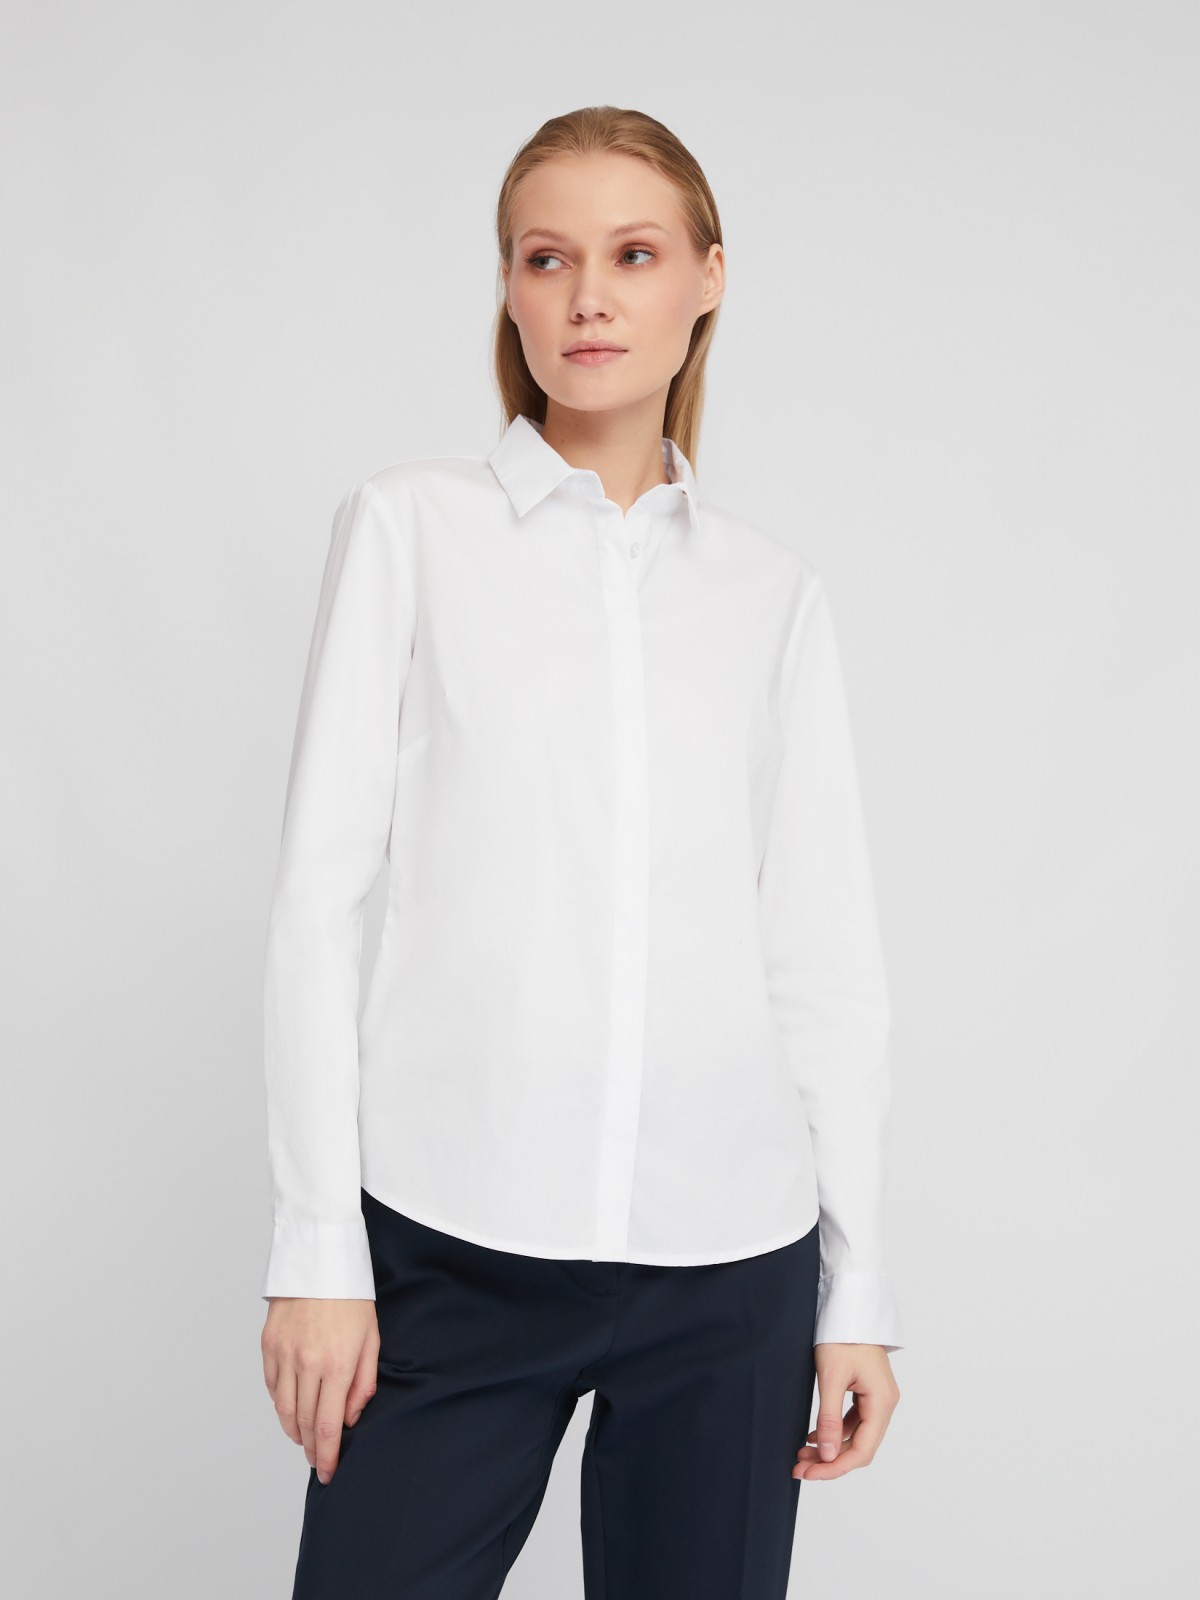 Офисная рубашка полуприлегающего силуэта с принтом-надписью zolla 024111159082, цвет белый, размер XS - фото 3